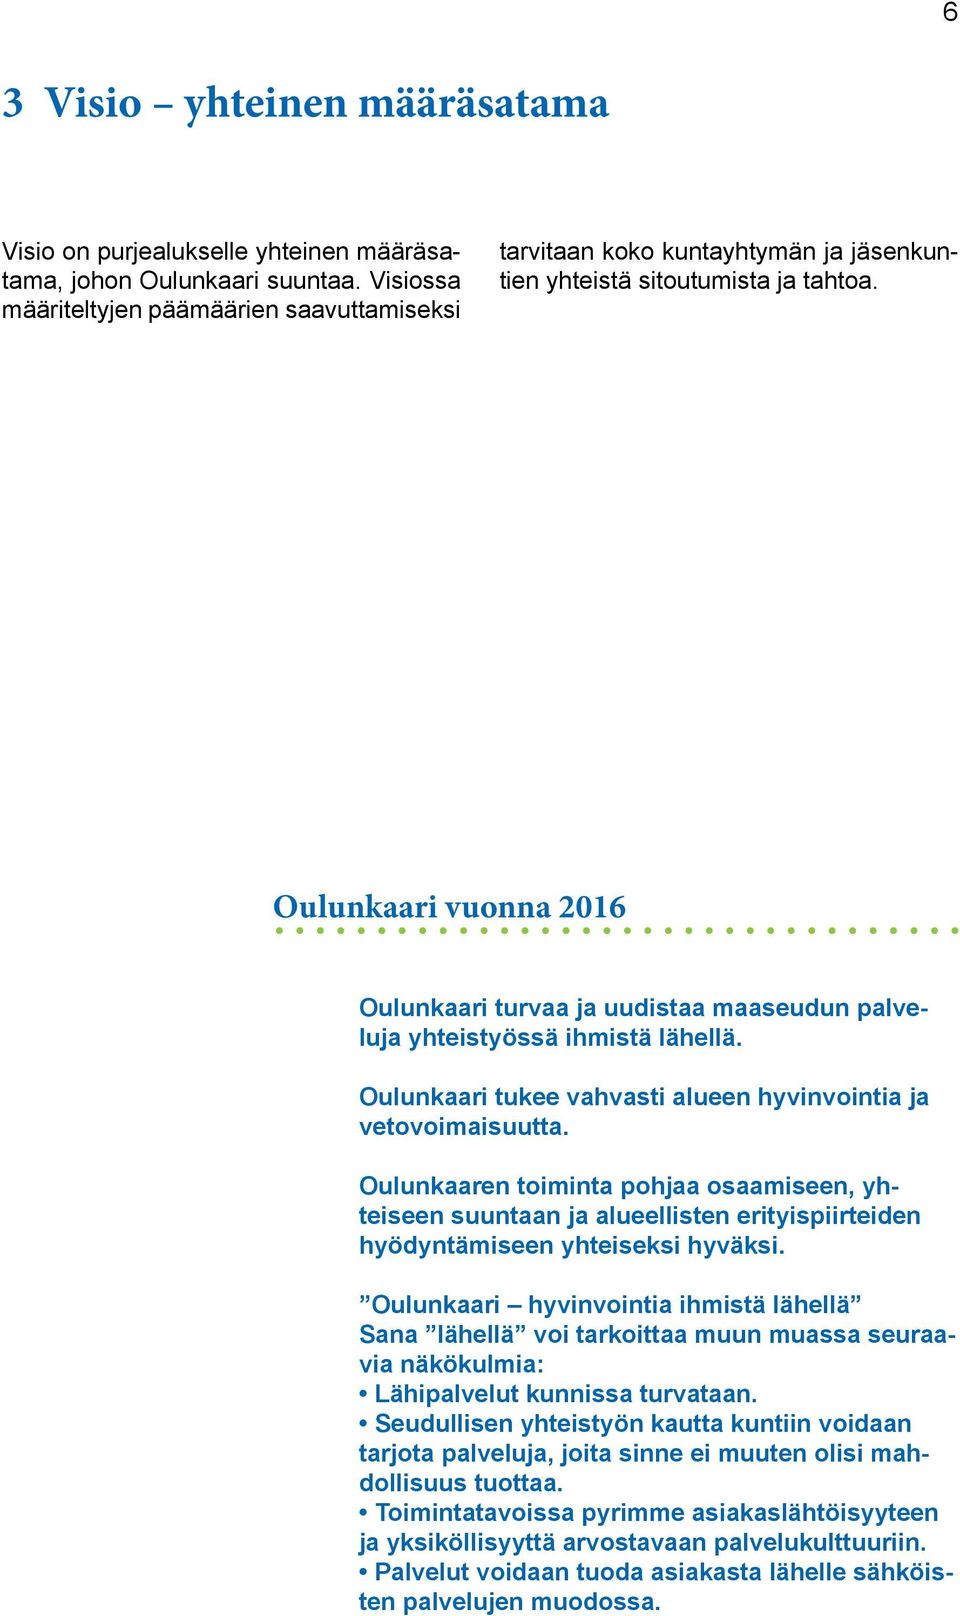 Oulunkaari vuonna 2016 Oulunkaari turvaa ja uudistaa maaseudun palveluja yhteistyössä ihmistä lähellä. Oulunkaari tukee vahvasti alueen hyvinvointia ja vetovoimaisuutta.